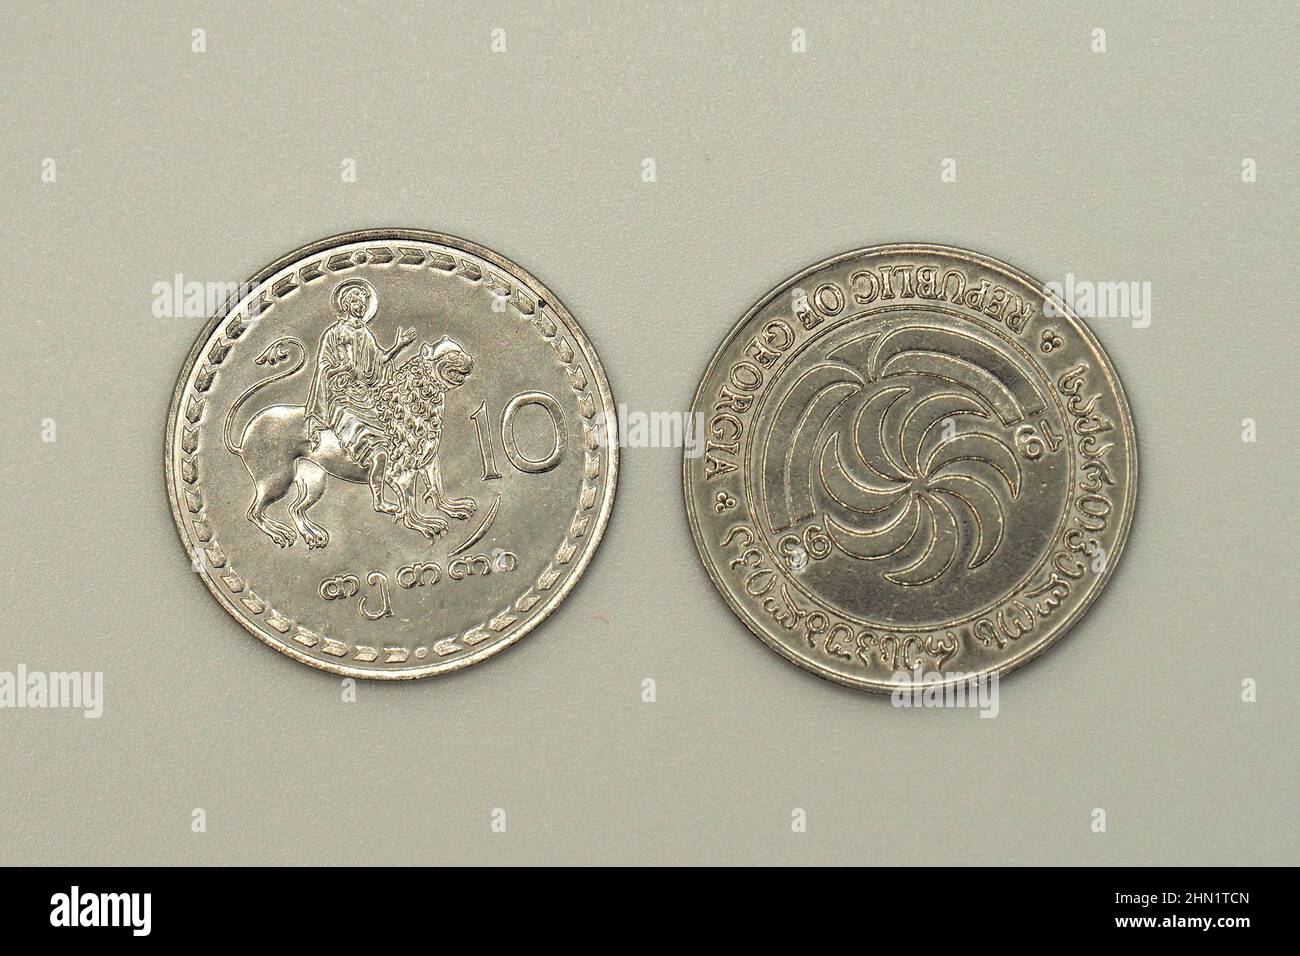 ten (10) tetri coins, Georgian lari (GEL), Georgia, Europe Stock Photo